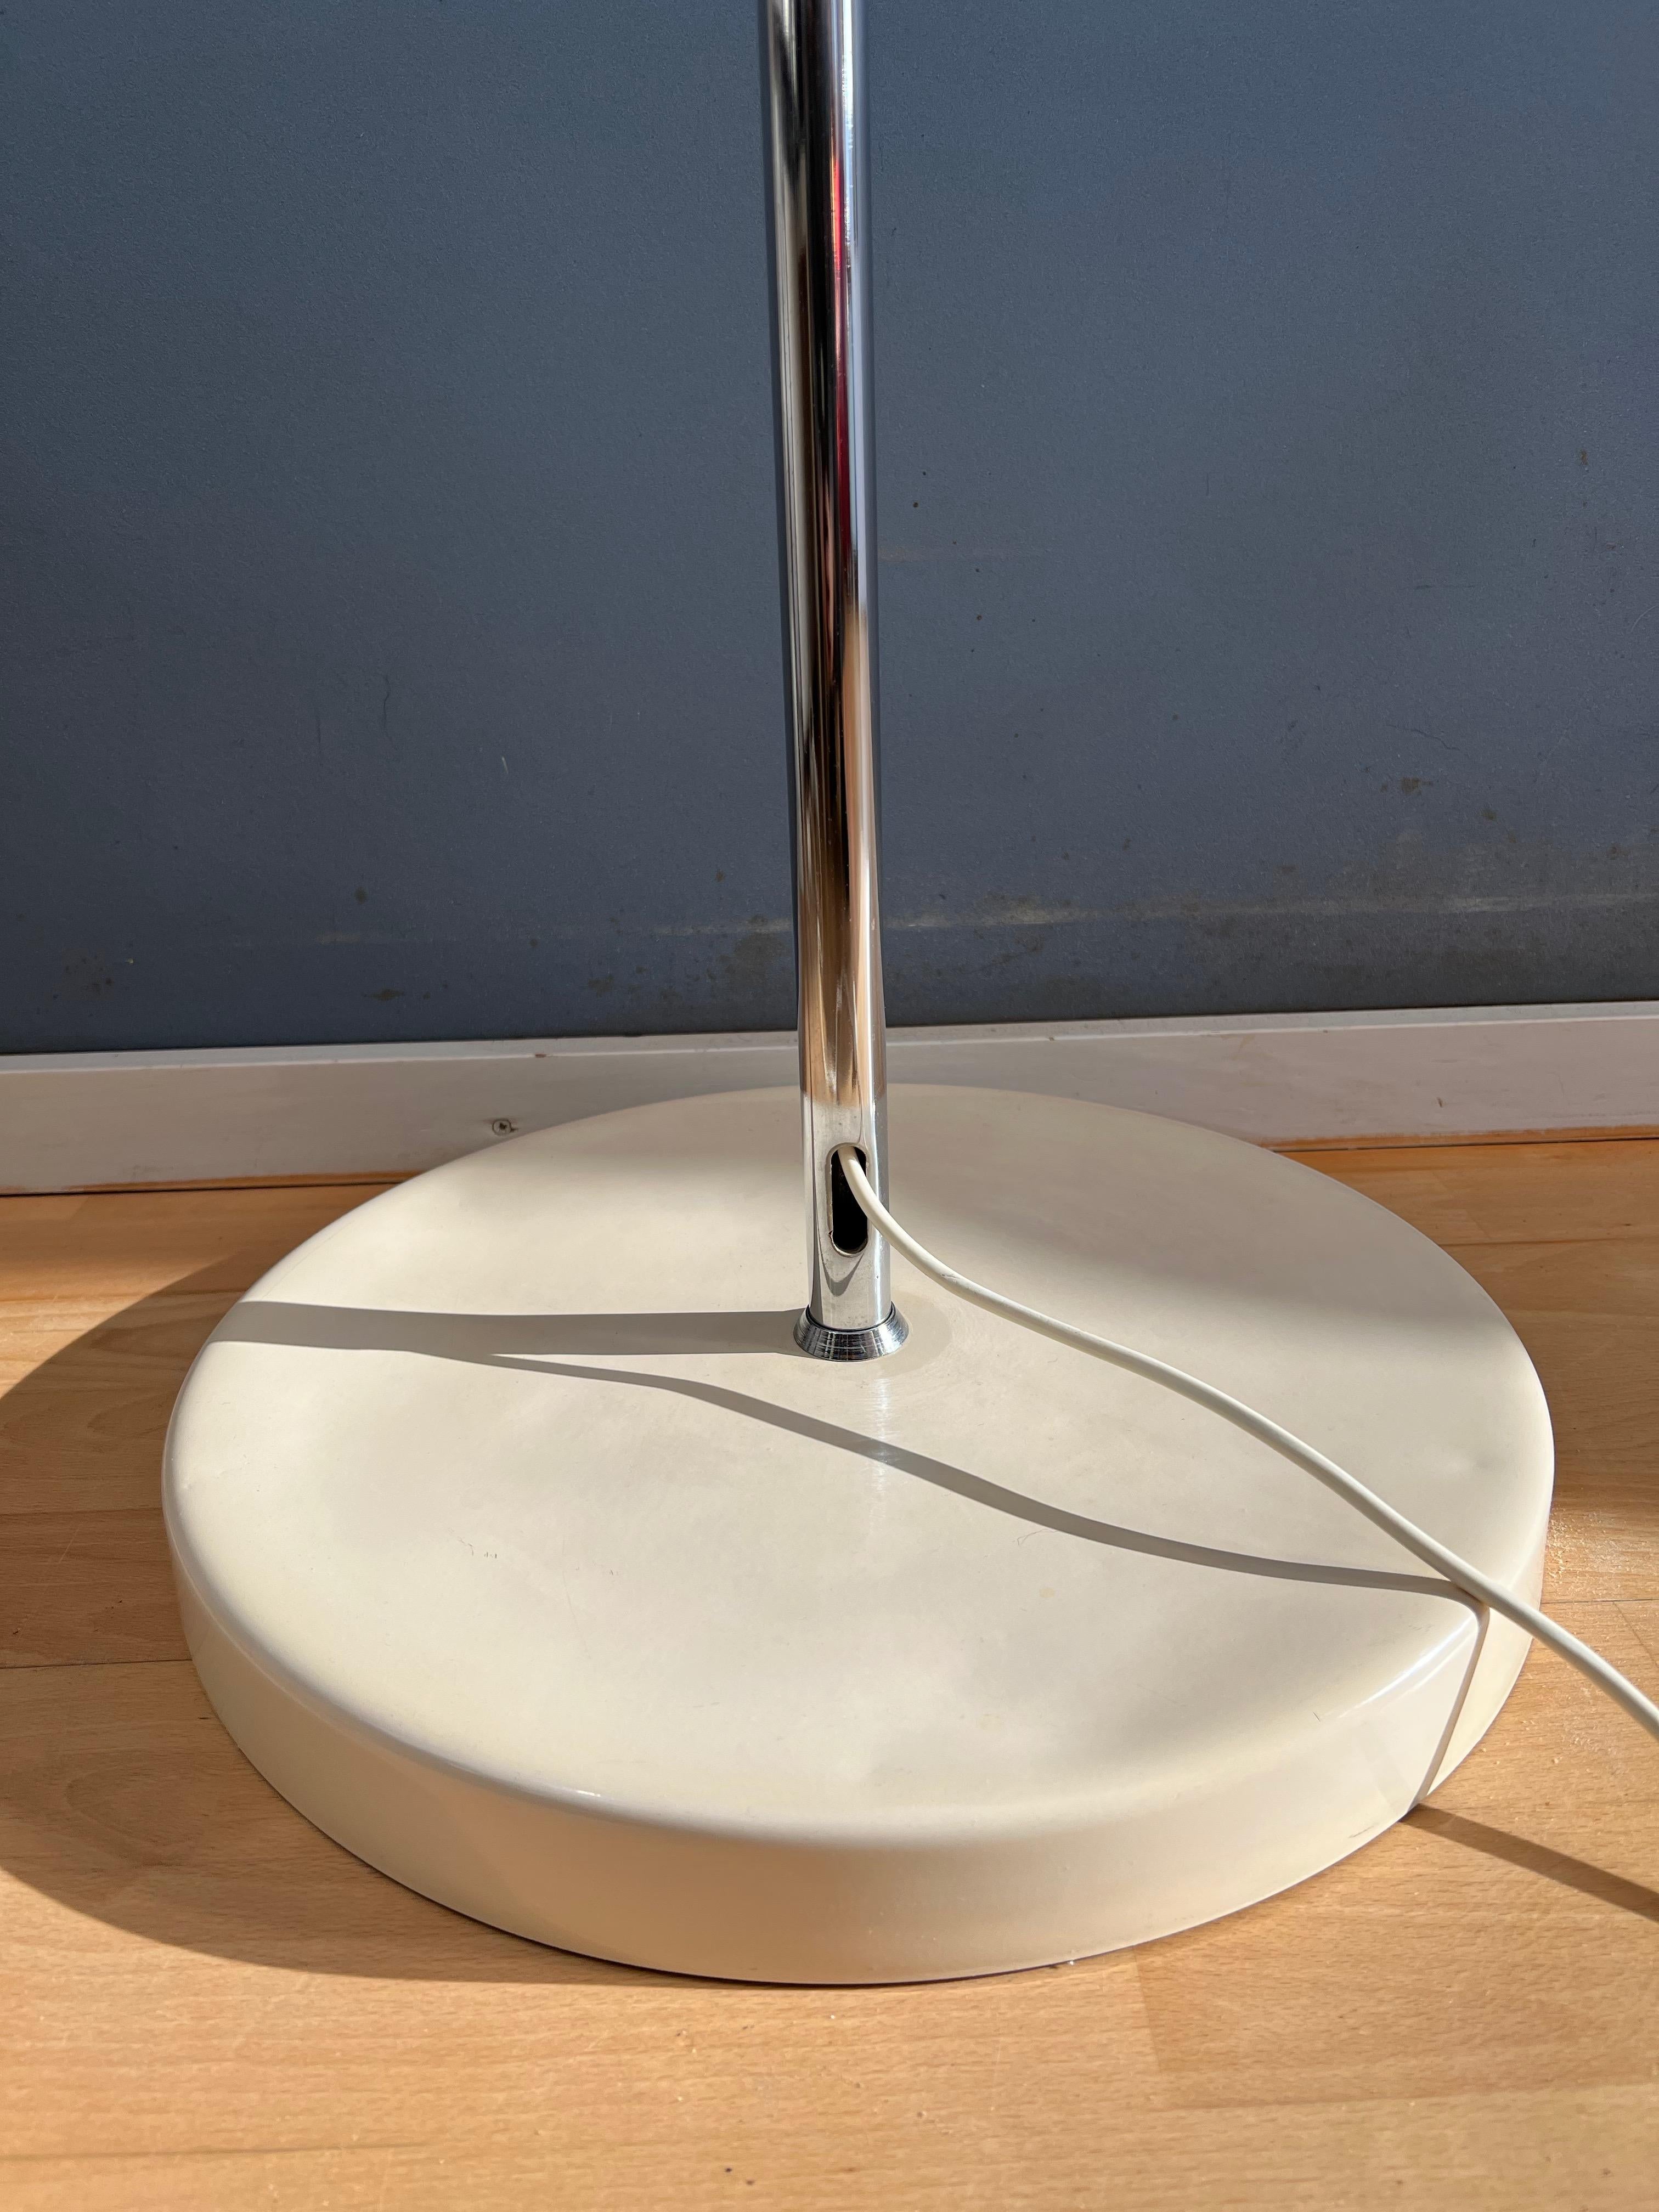 Space Age GEPO Arc Floor Lamp in Style of Guzzini / Goffredo Reggiani 9